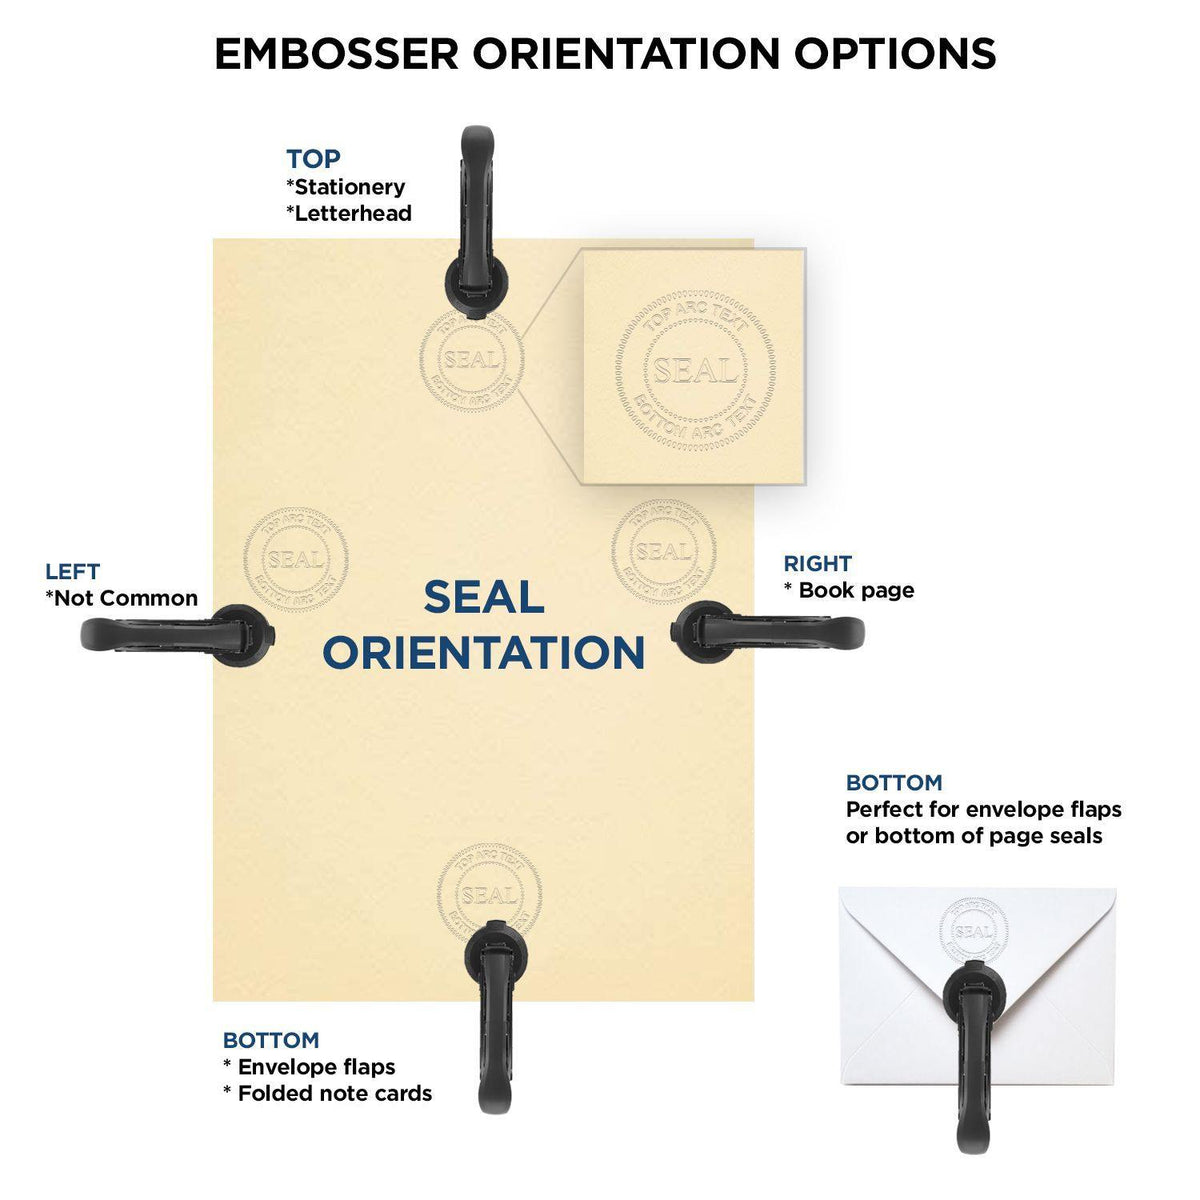 Real Estate Appraiser Blue Soft Seal Embosser - Engineer Seal Stamps - Embosser Type_Handheld, Embosser Type_Soft Seal, Type of Use_Professional